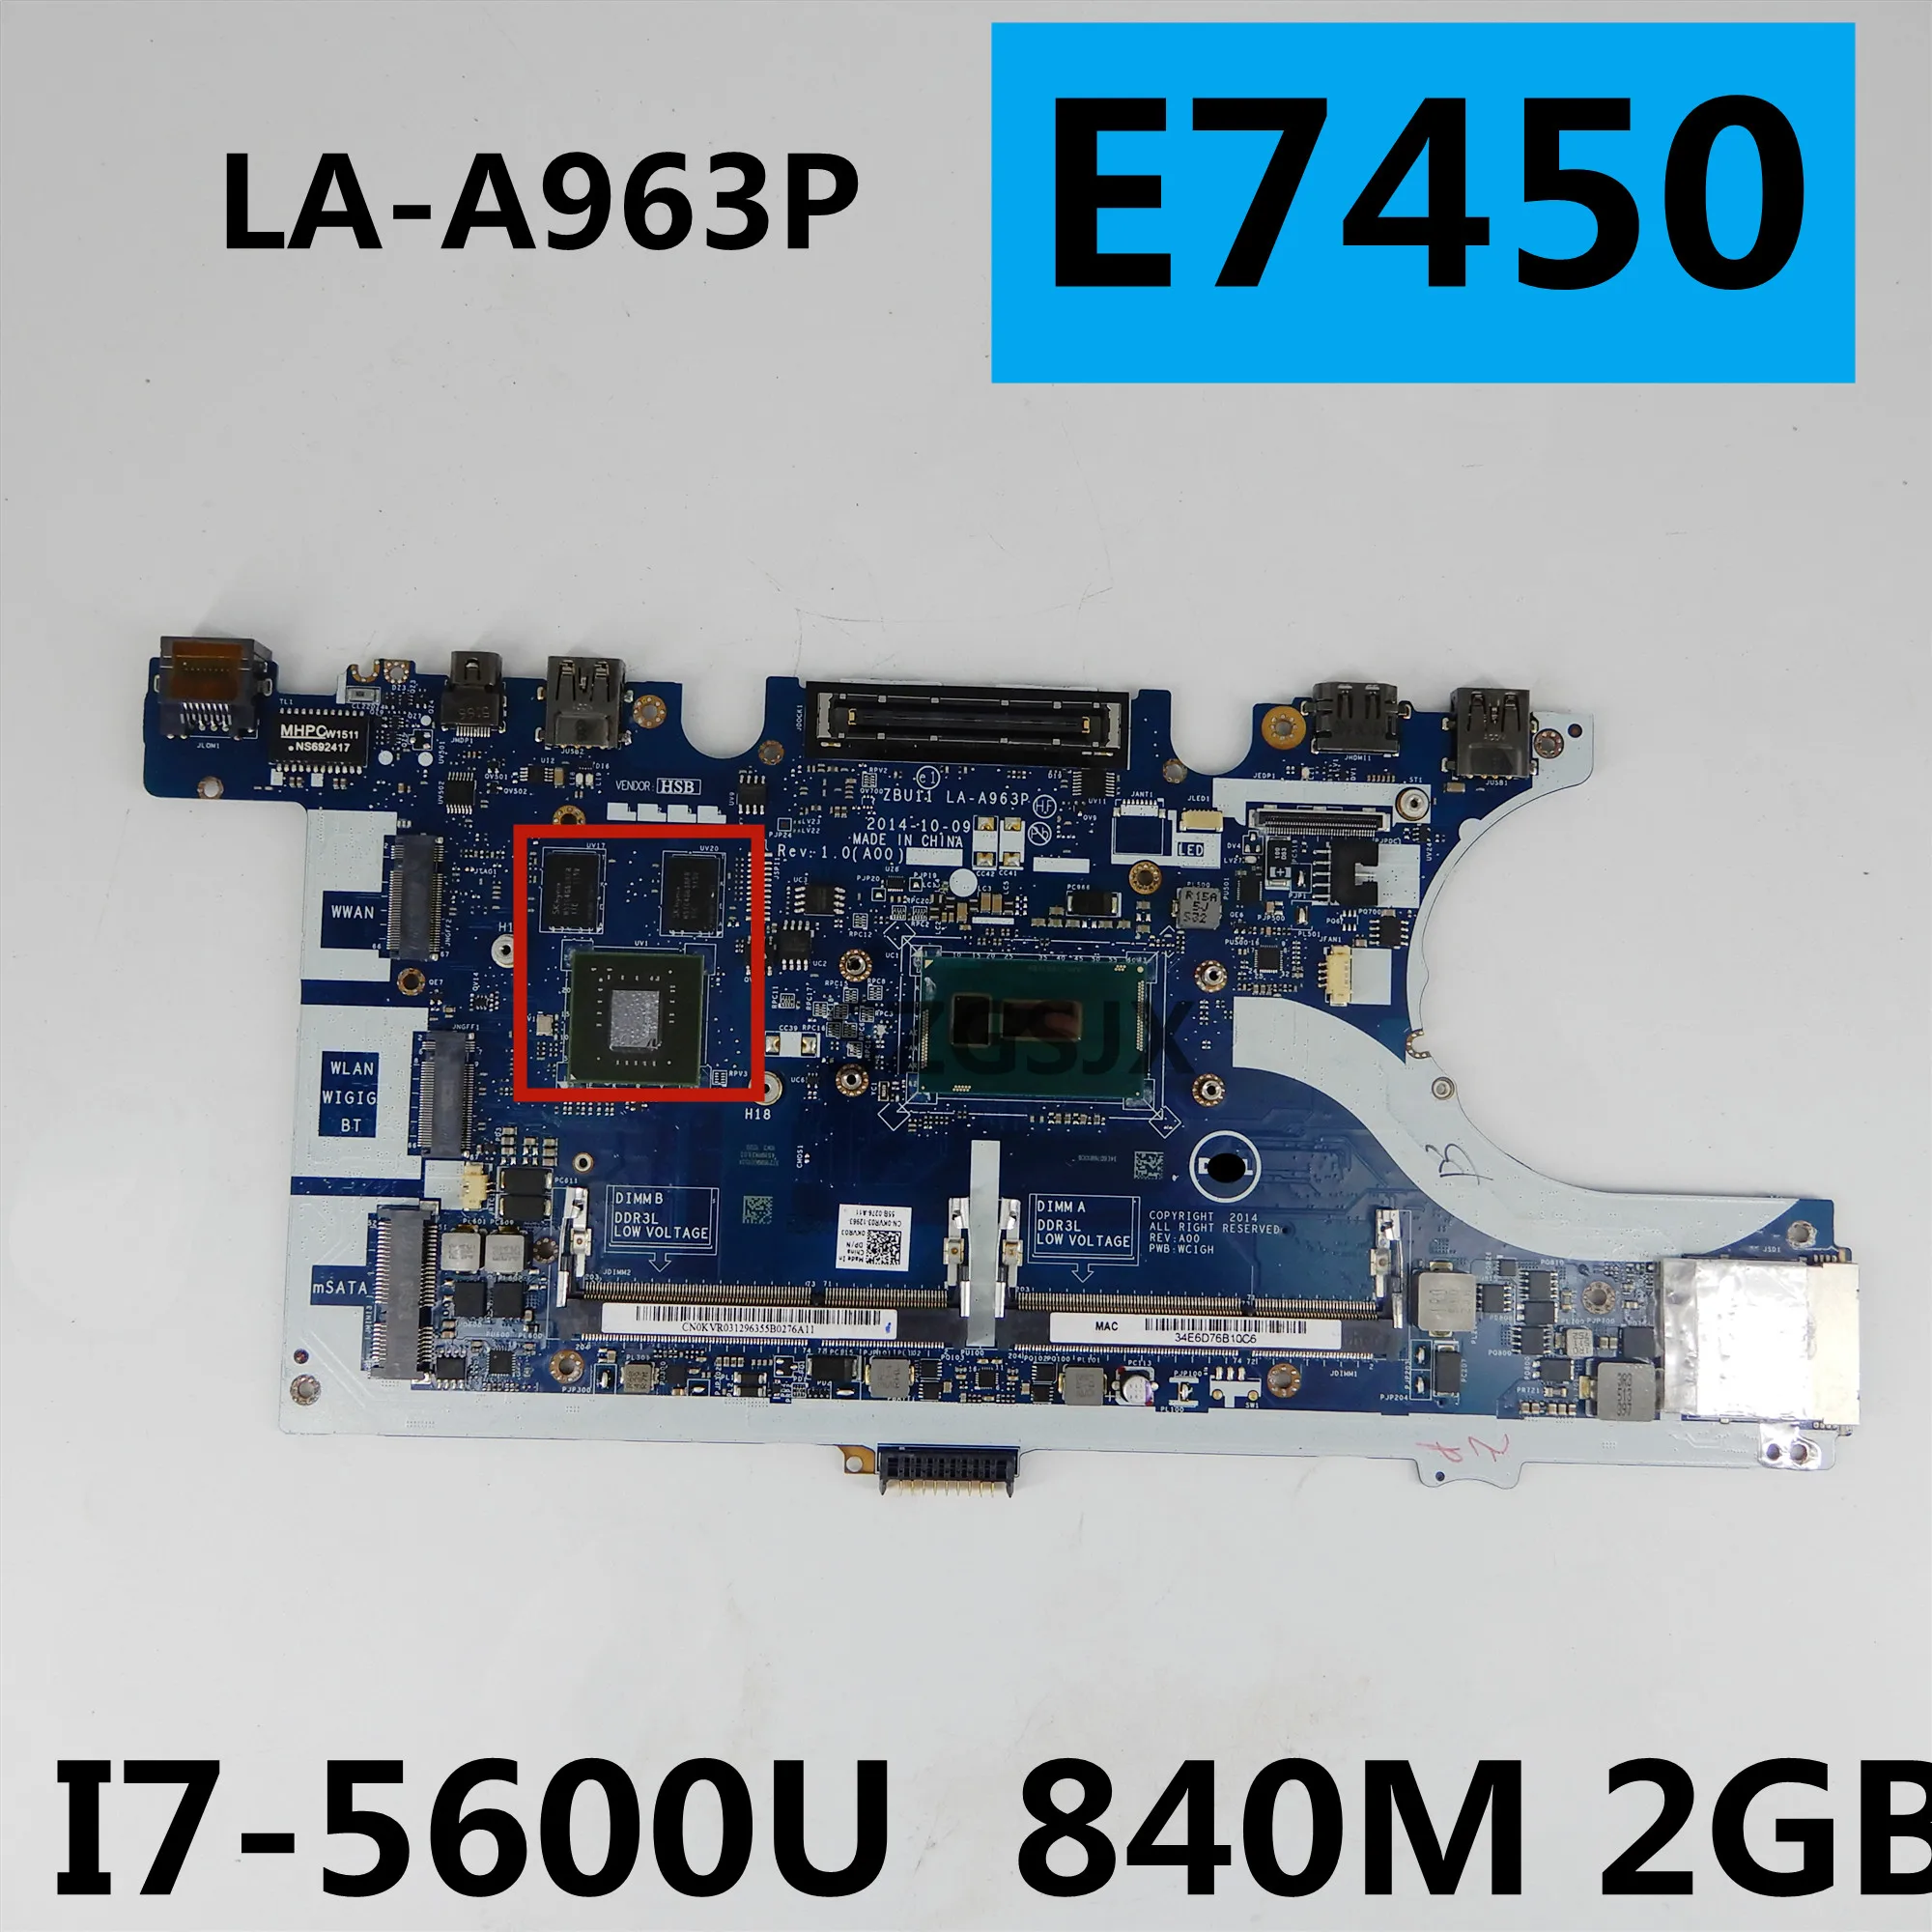   ZBU11 LA-A963P  DELL Latitude E7450,  840M,  2 ,   KVR03,   100% 